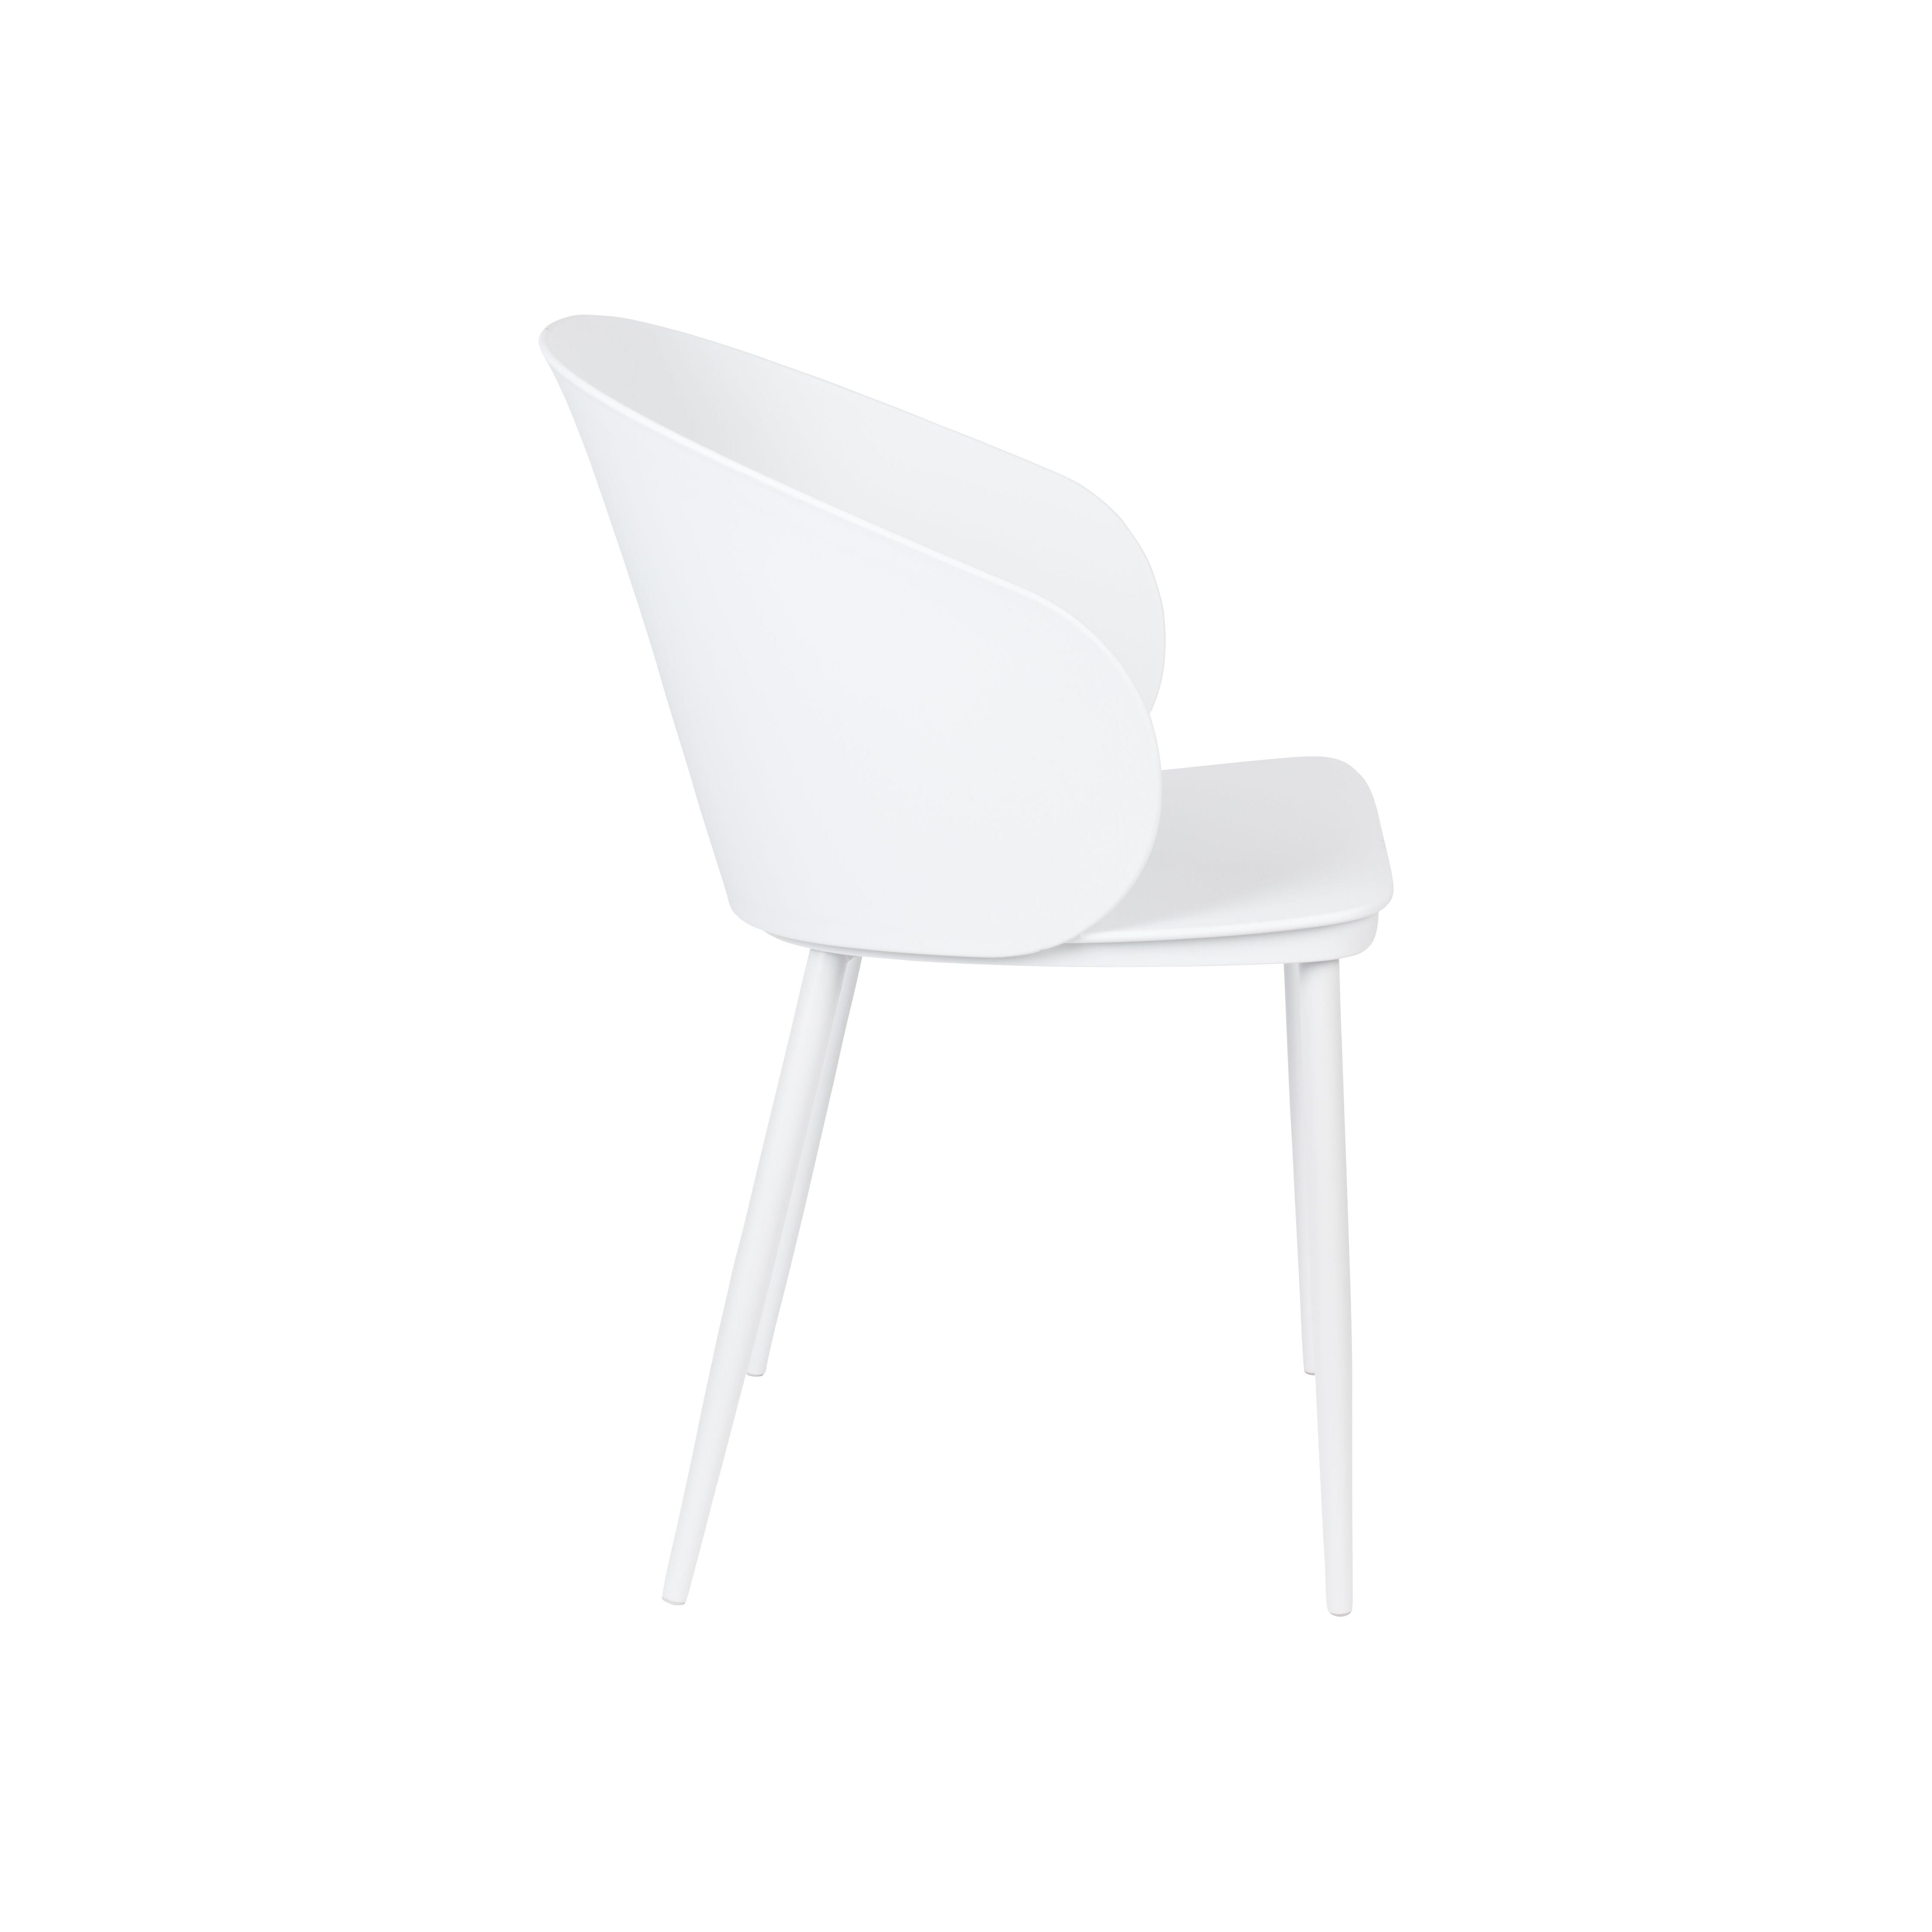 Chair gigi all white